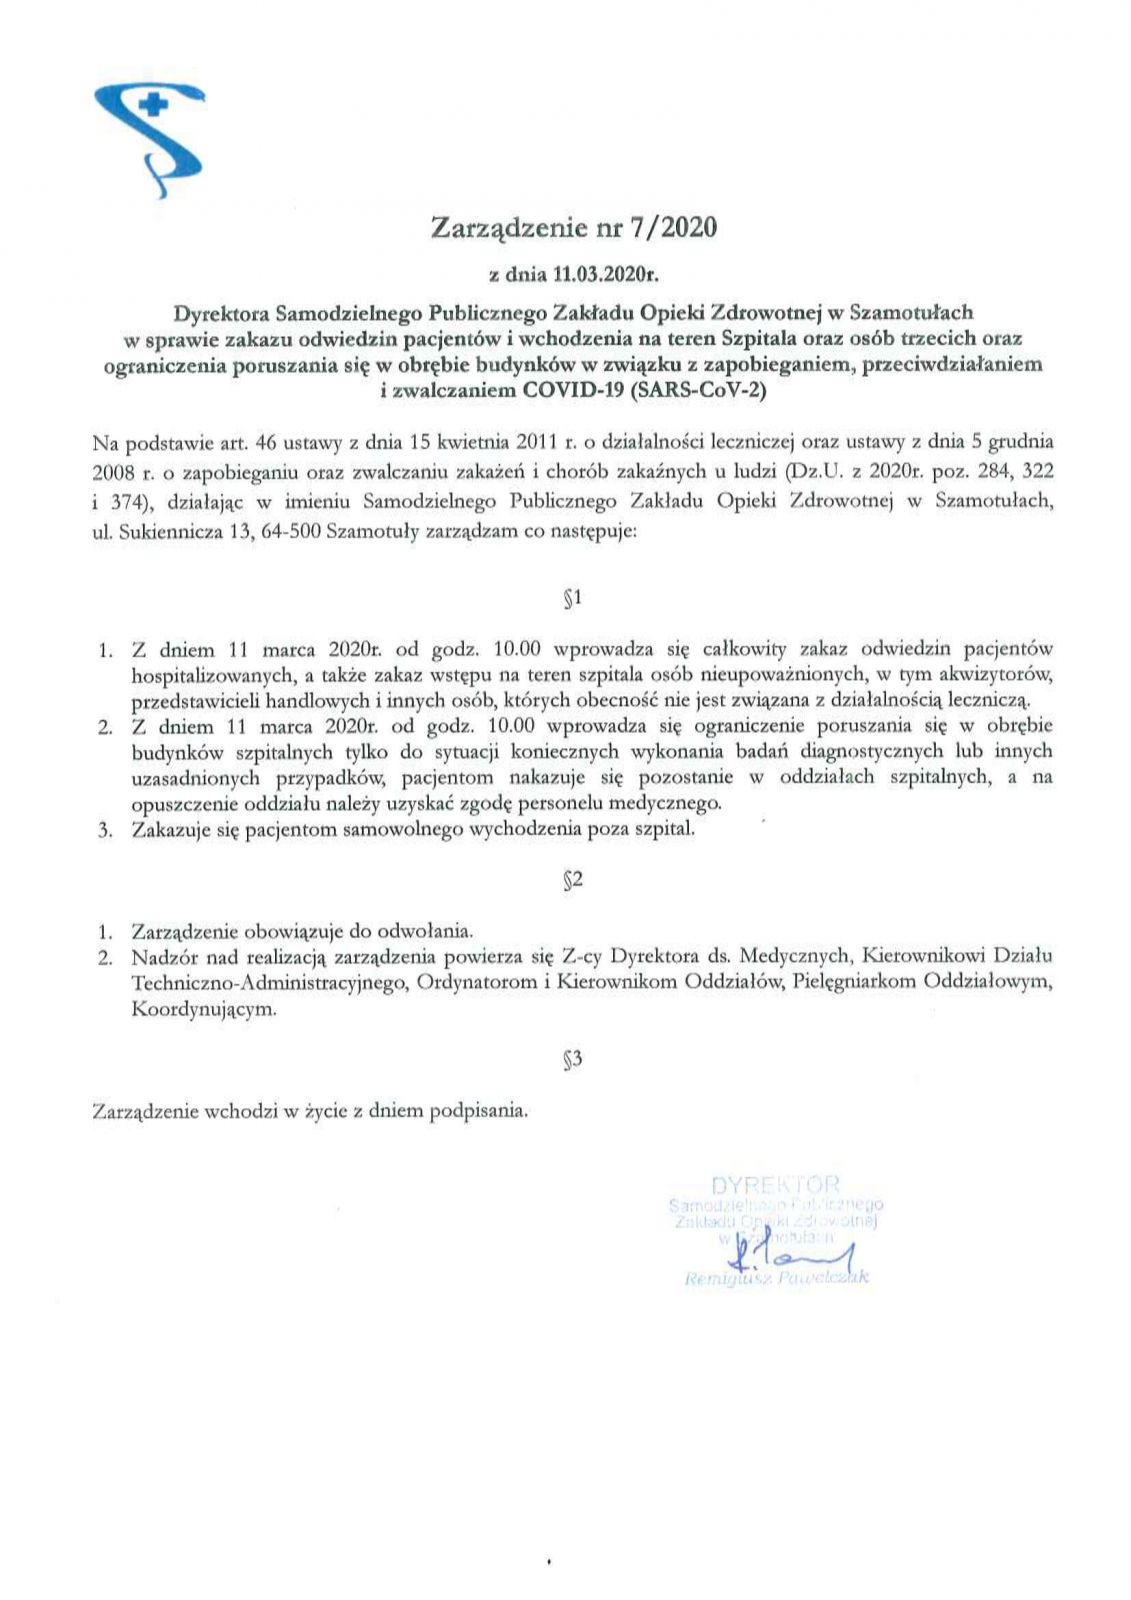 Zarządzenie Dyrektora SP ZOZ nr 7/2020 z dn. 11.03.2020 r.